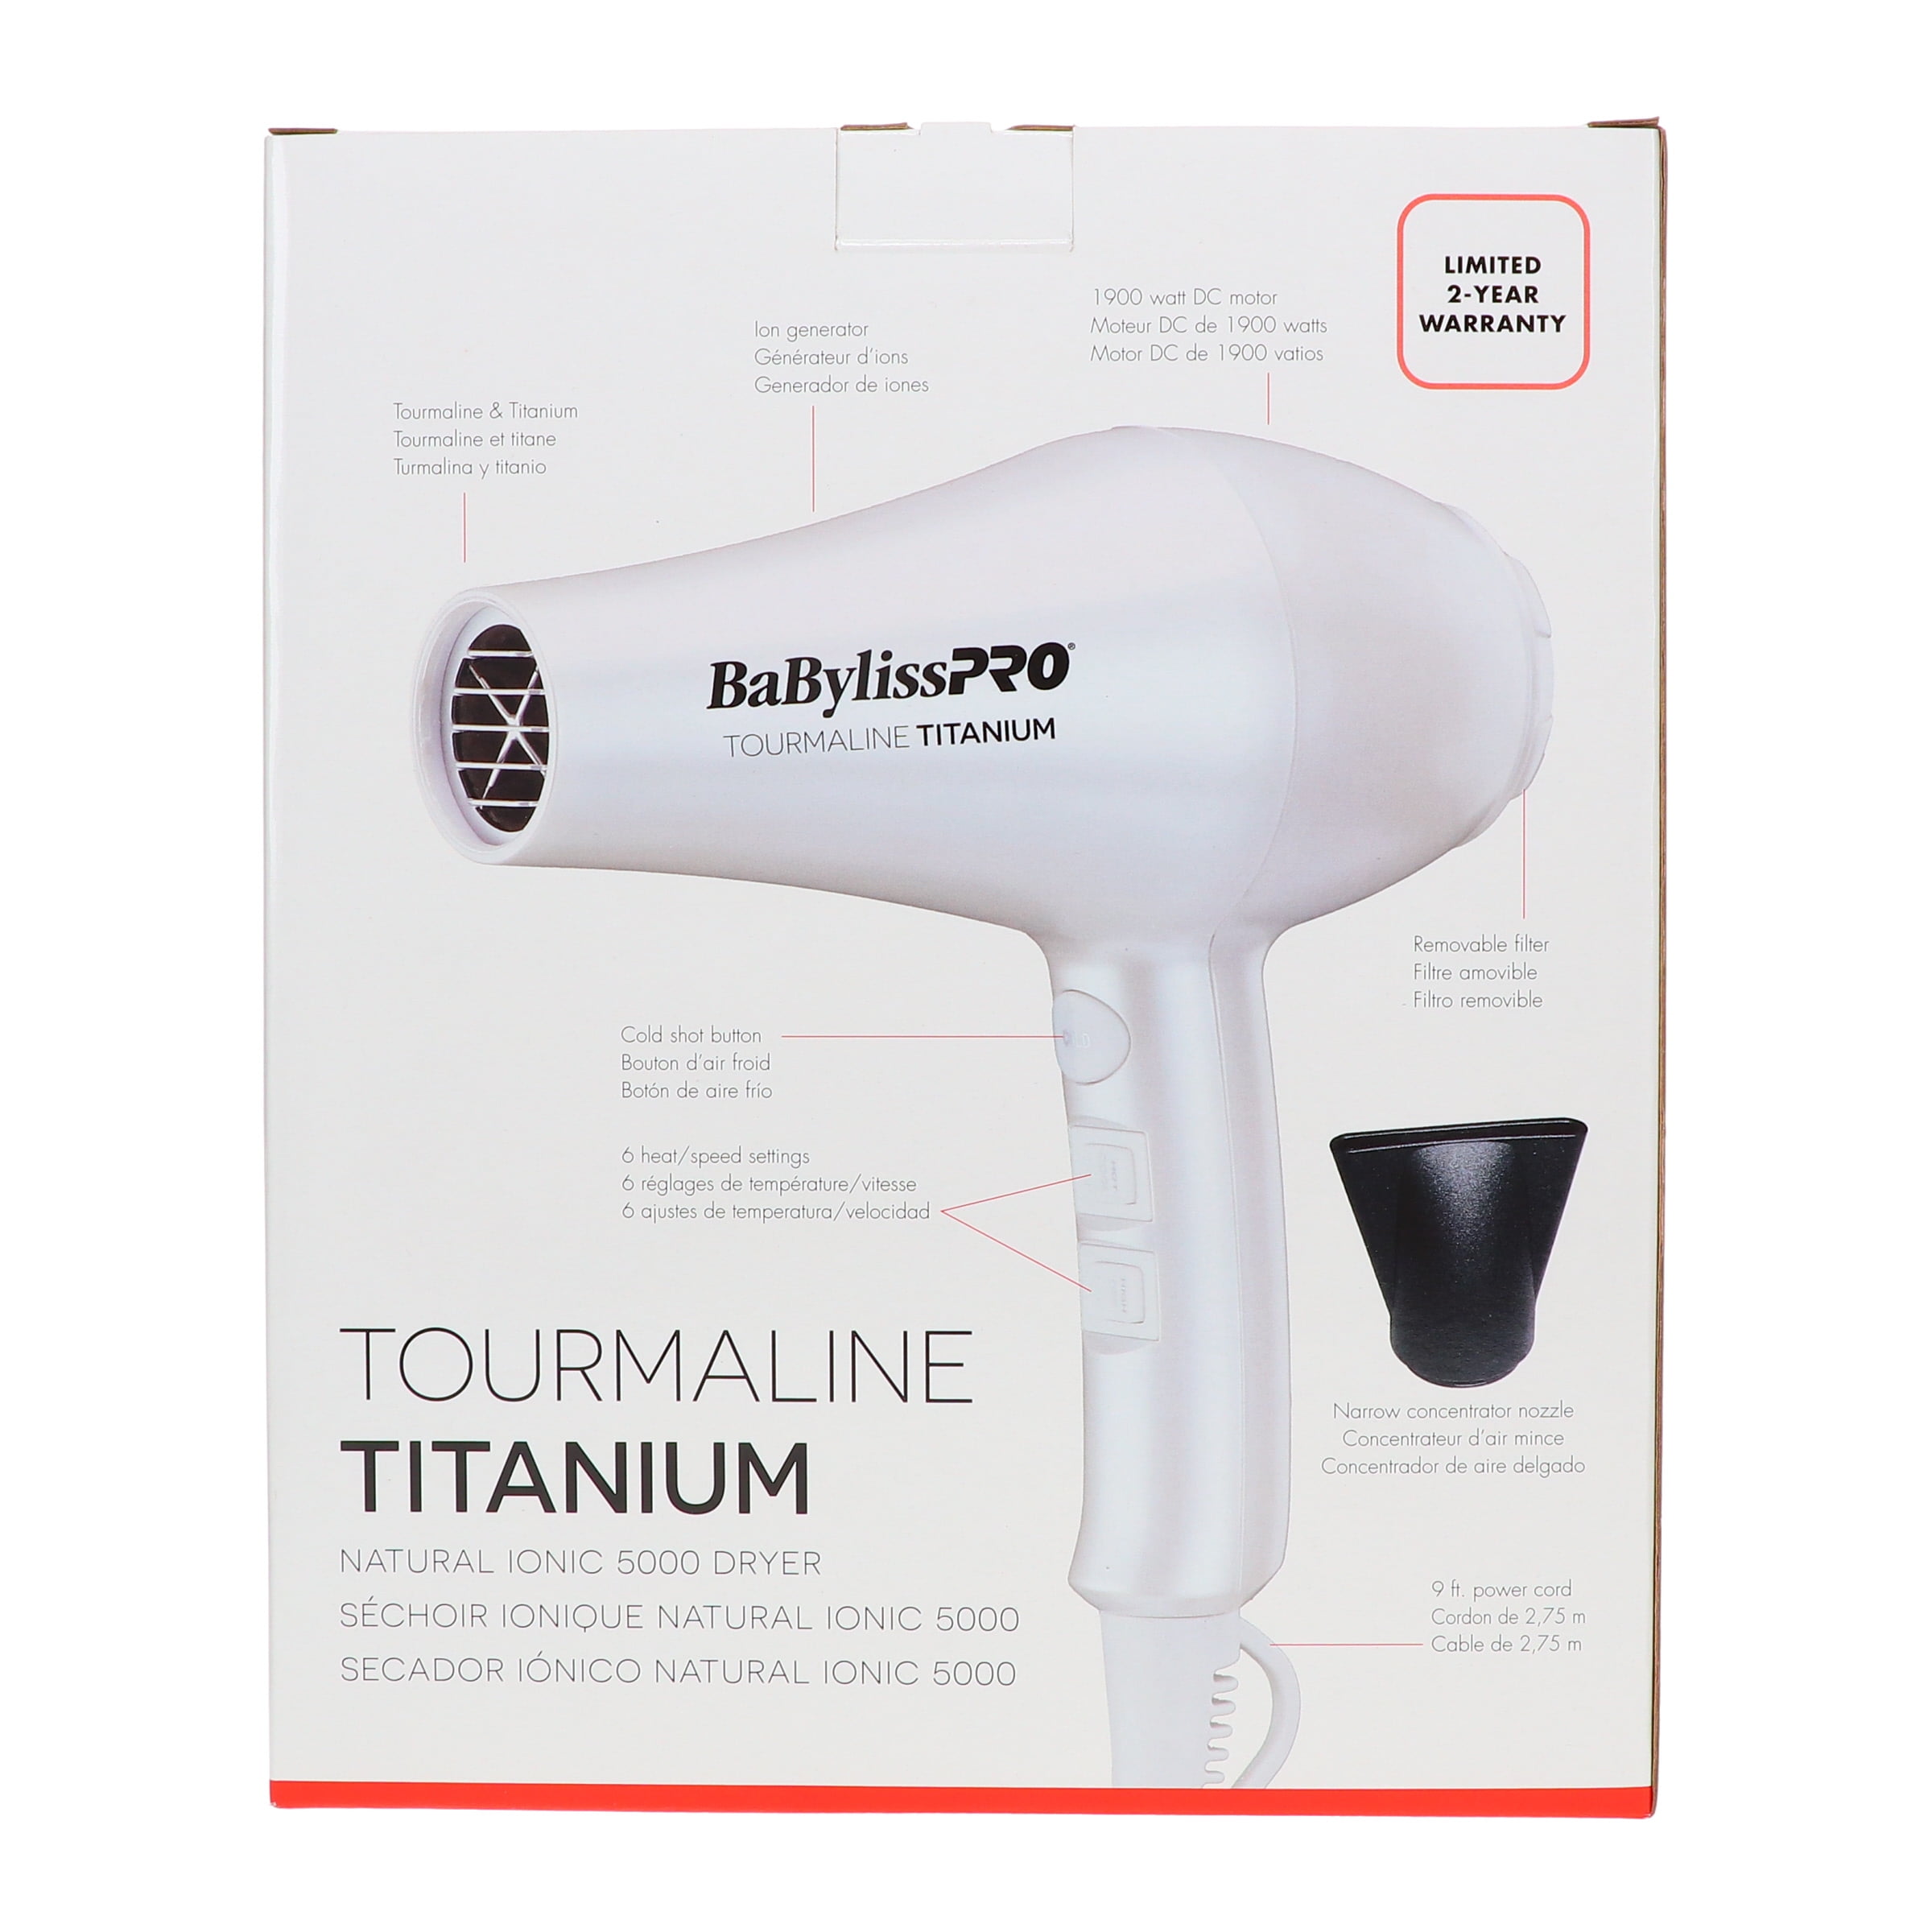 Aandringen Graag gedaan intern BaBylissPRO TT Tourmaline Titanium 5000 Dryer - Walmart.com